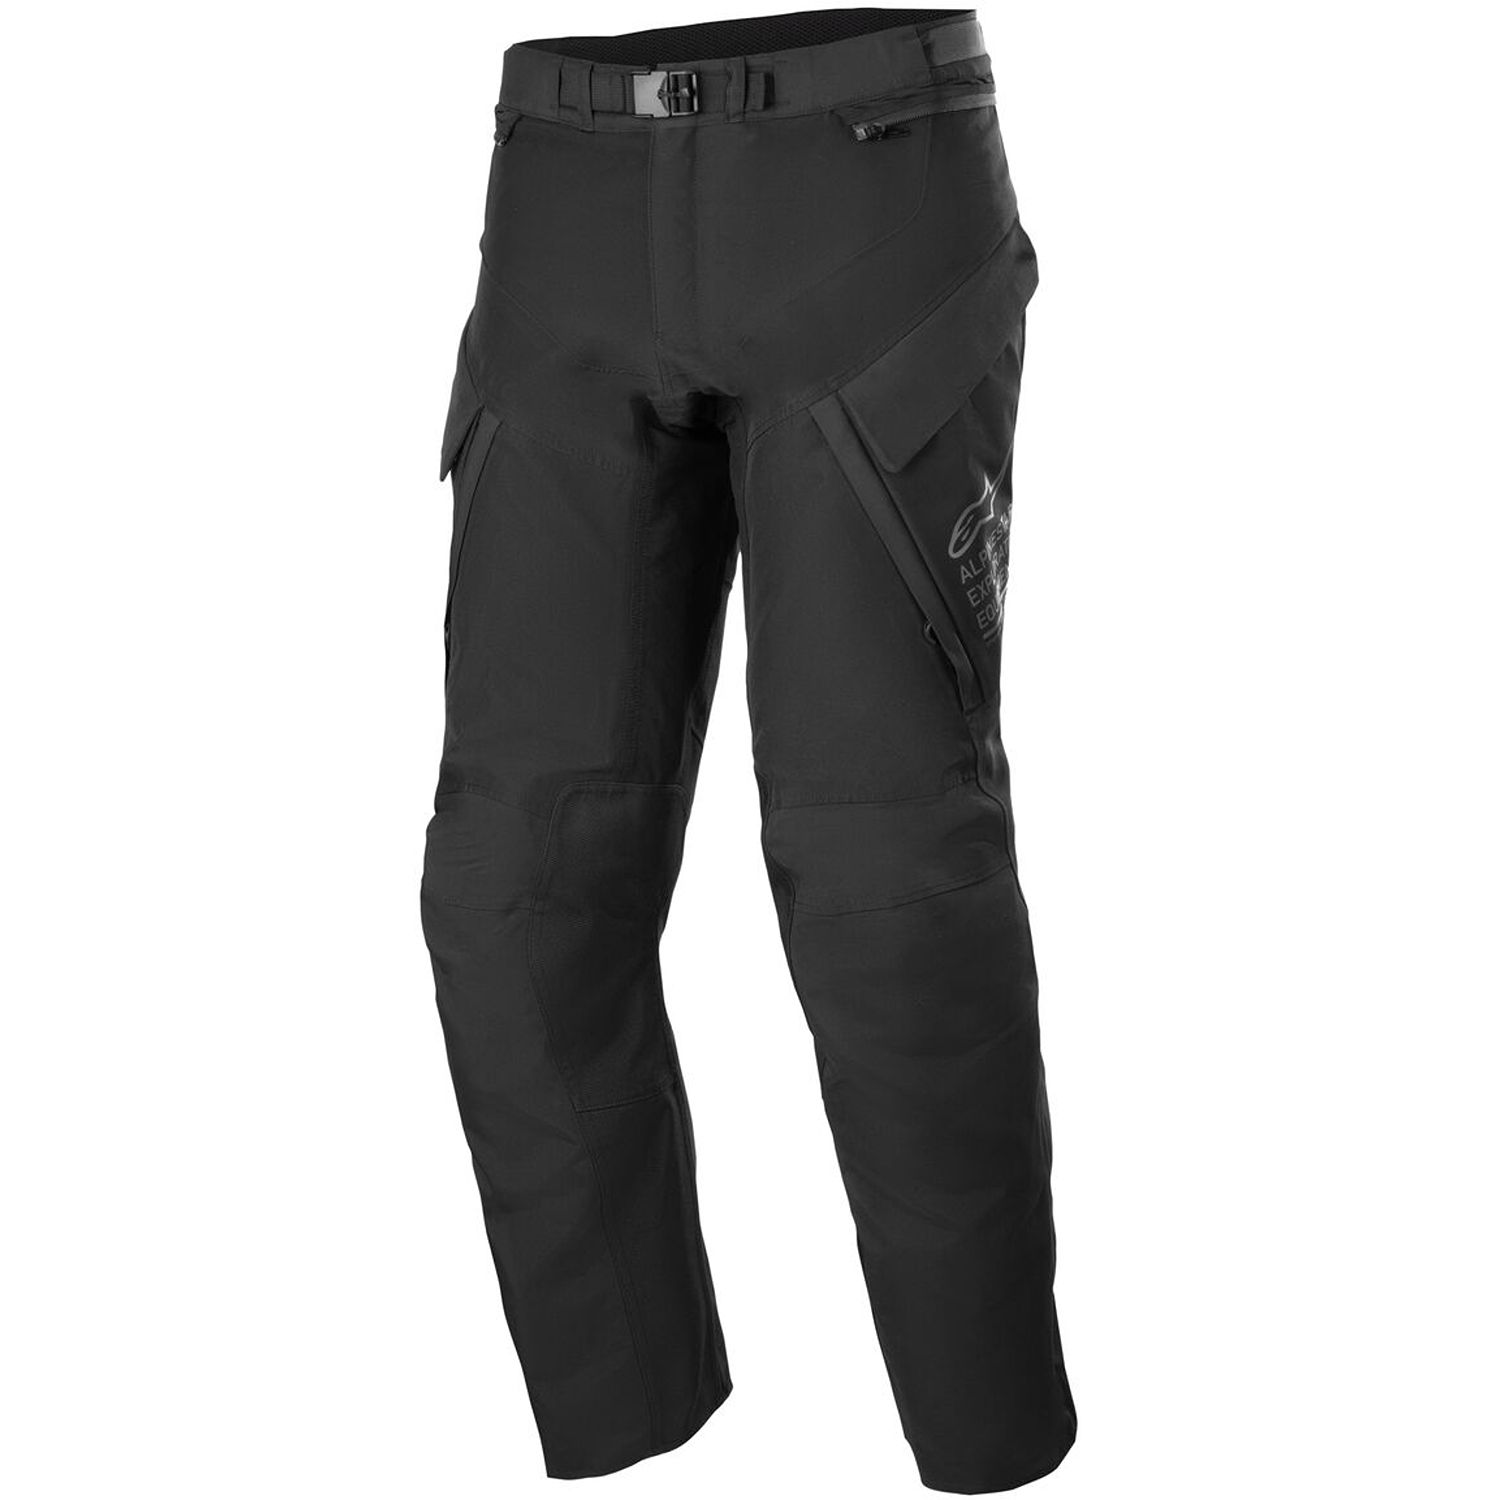 Image of Alpinestars ST-7 2L Gore-Tex Pants Black Dark Grey Size XL ID 8059347249698